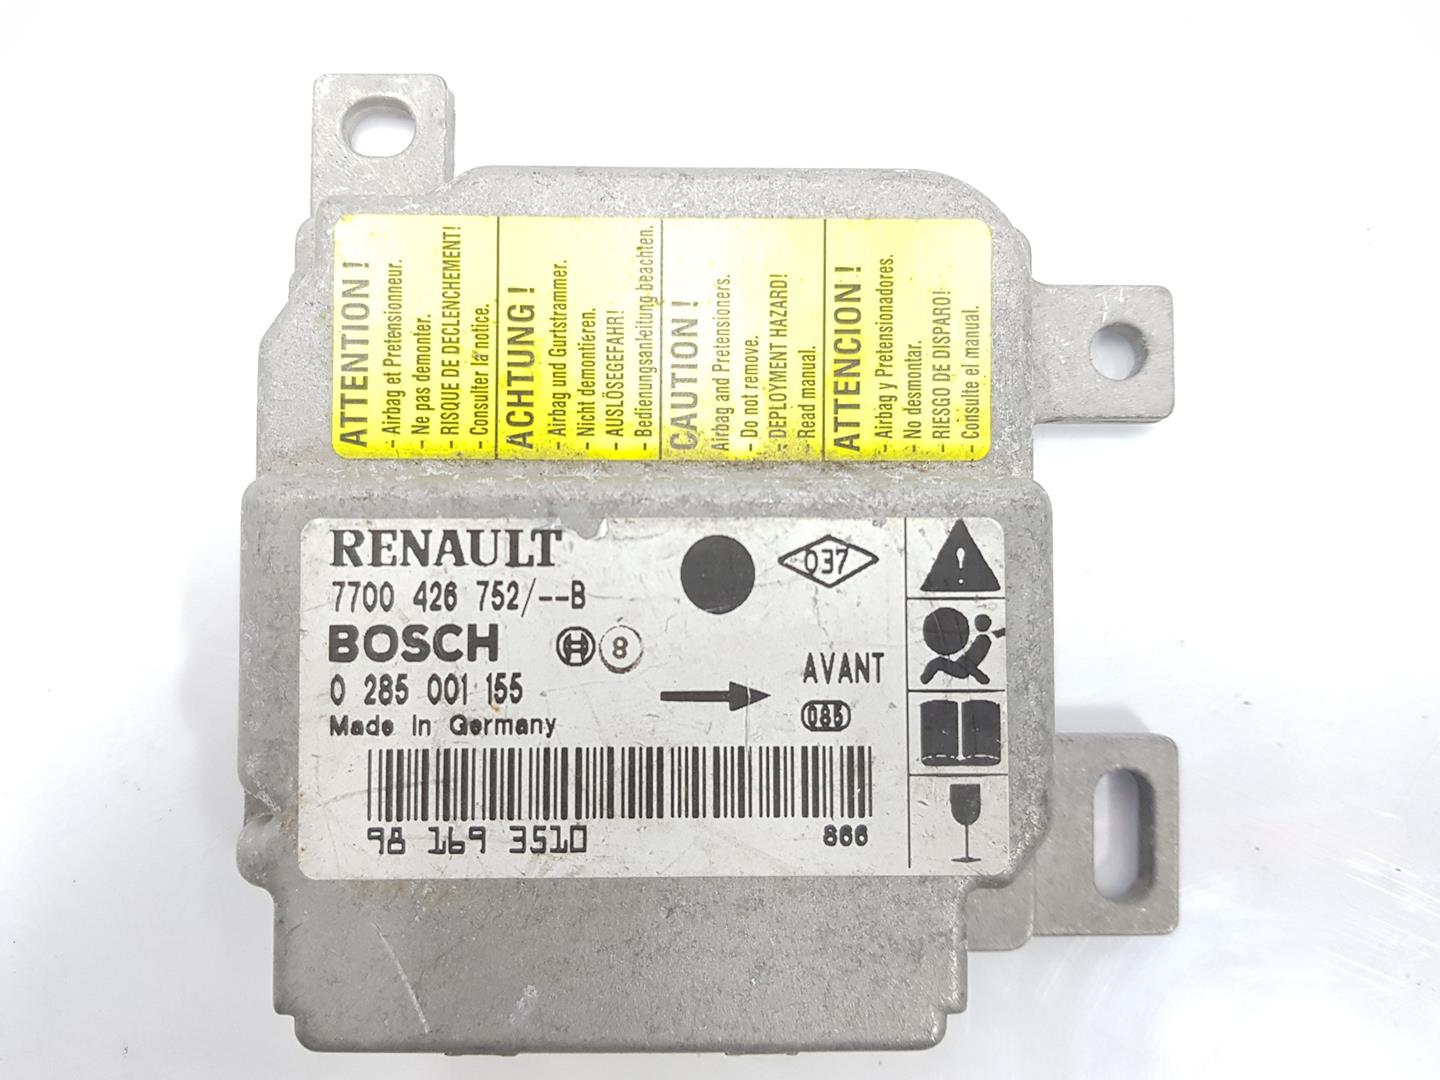 RENAULT Clio 3 generation (2005-2012) SRS Control Unit 7700426752, 7700426752, 2222DL 24857232